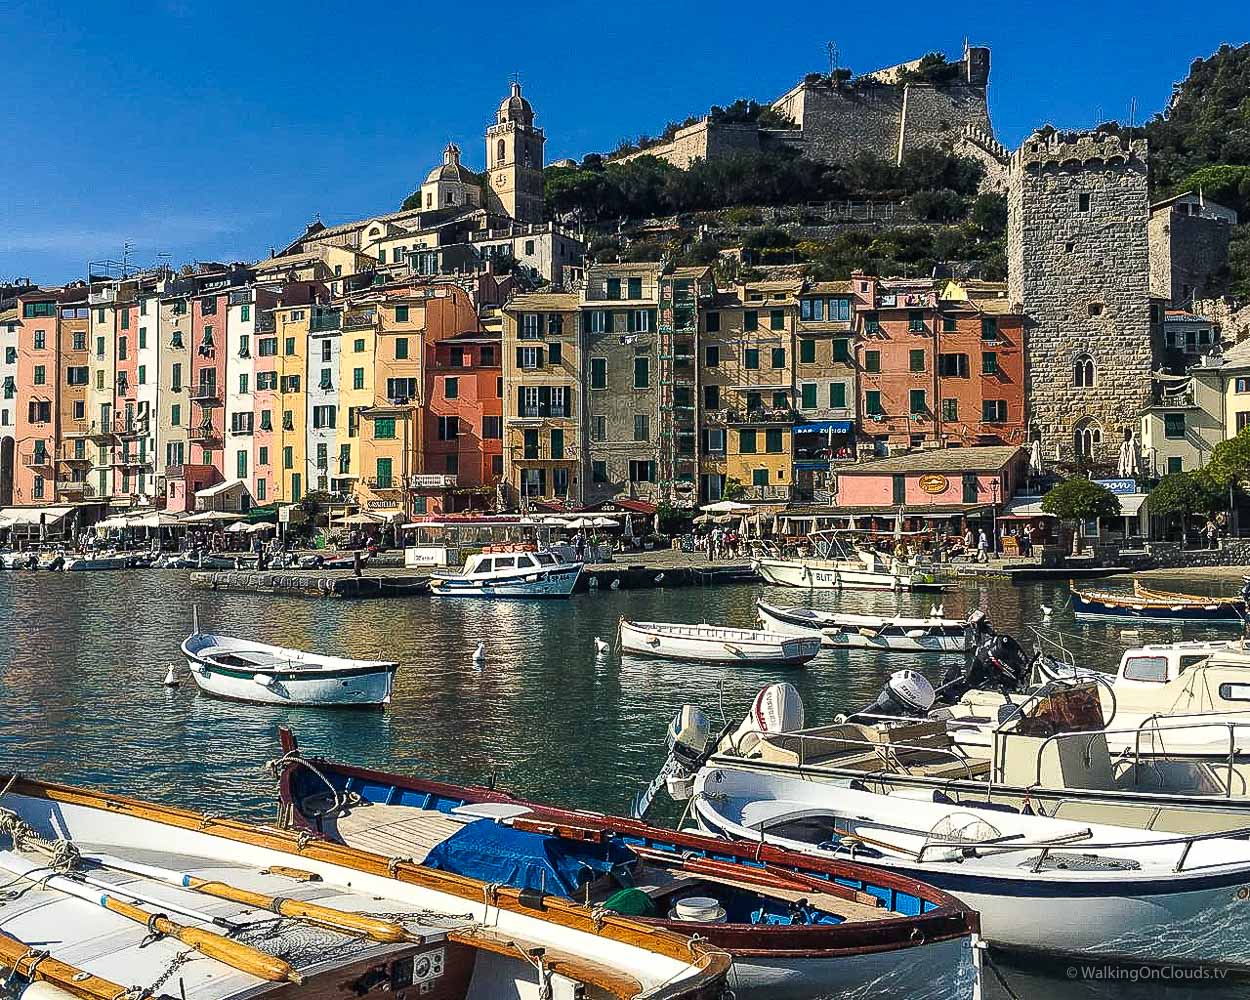 Reiseblog uber Kreuzfahrten und Fernreisen als Best-Ager - Was erlebt man als Rentner auf der TUI Mein Schiff in La Spezia und der Toskana? Welche Ausflüge werden angeboten? Was wird auf einer Kreuzfahrt geboten?